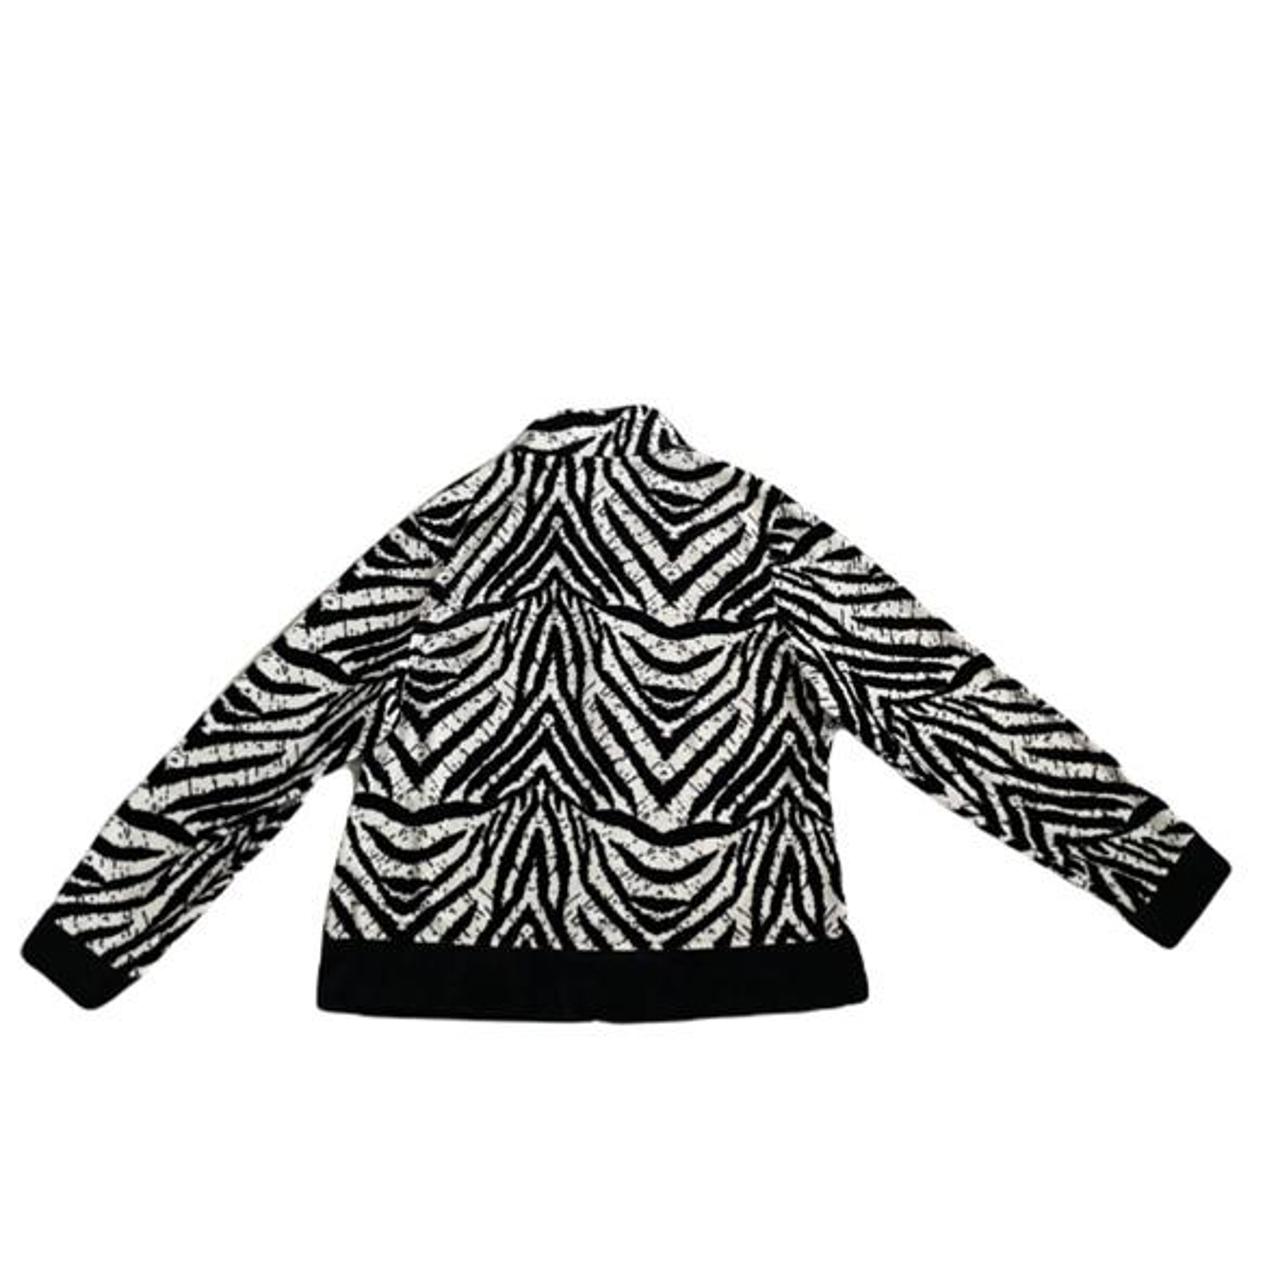 Product Image 4 - zebra print jacket with black